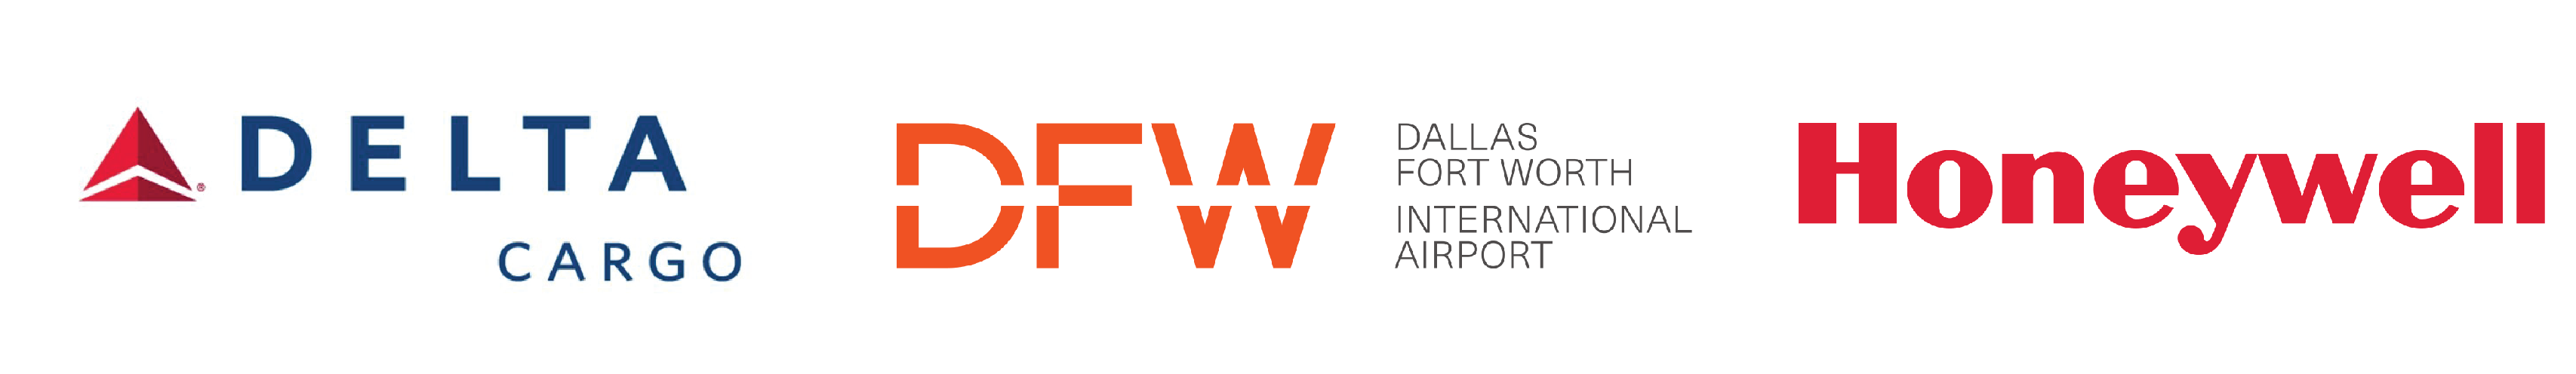 DFW Cargo Association Events